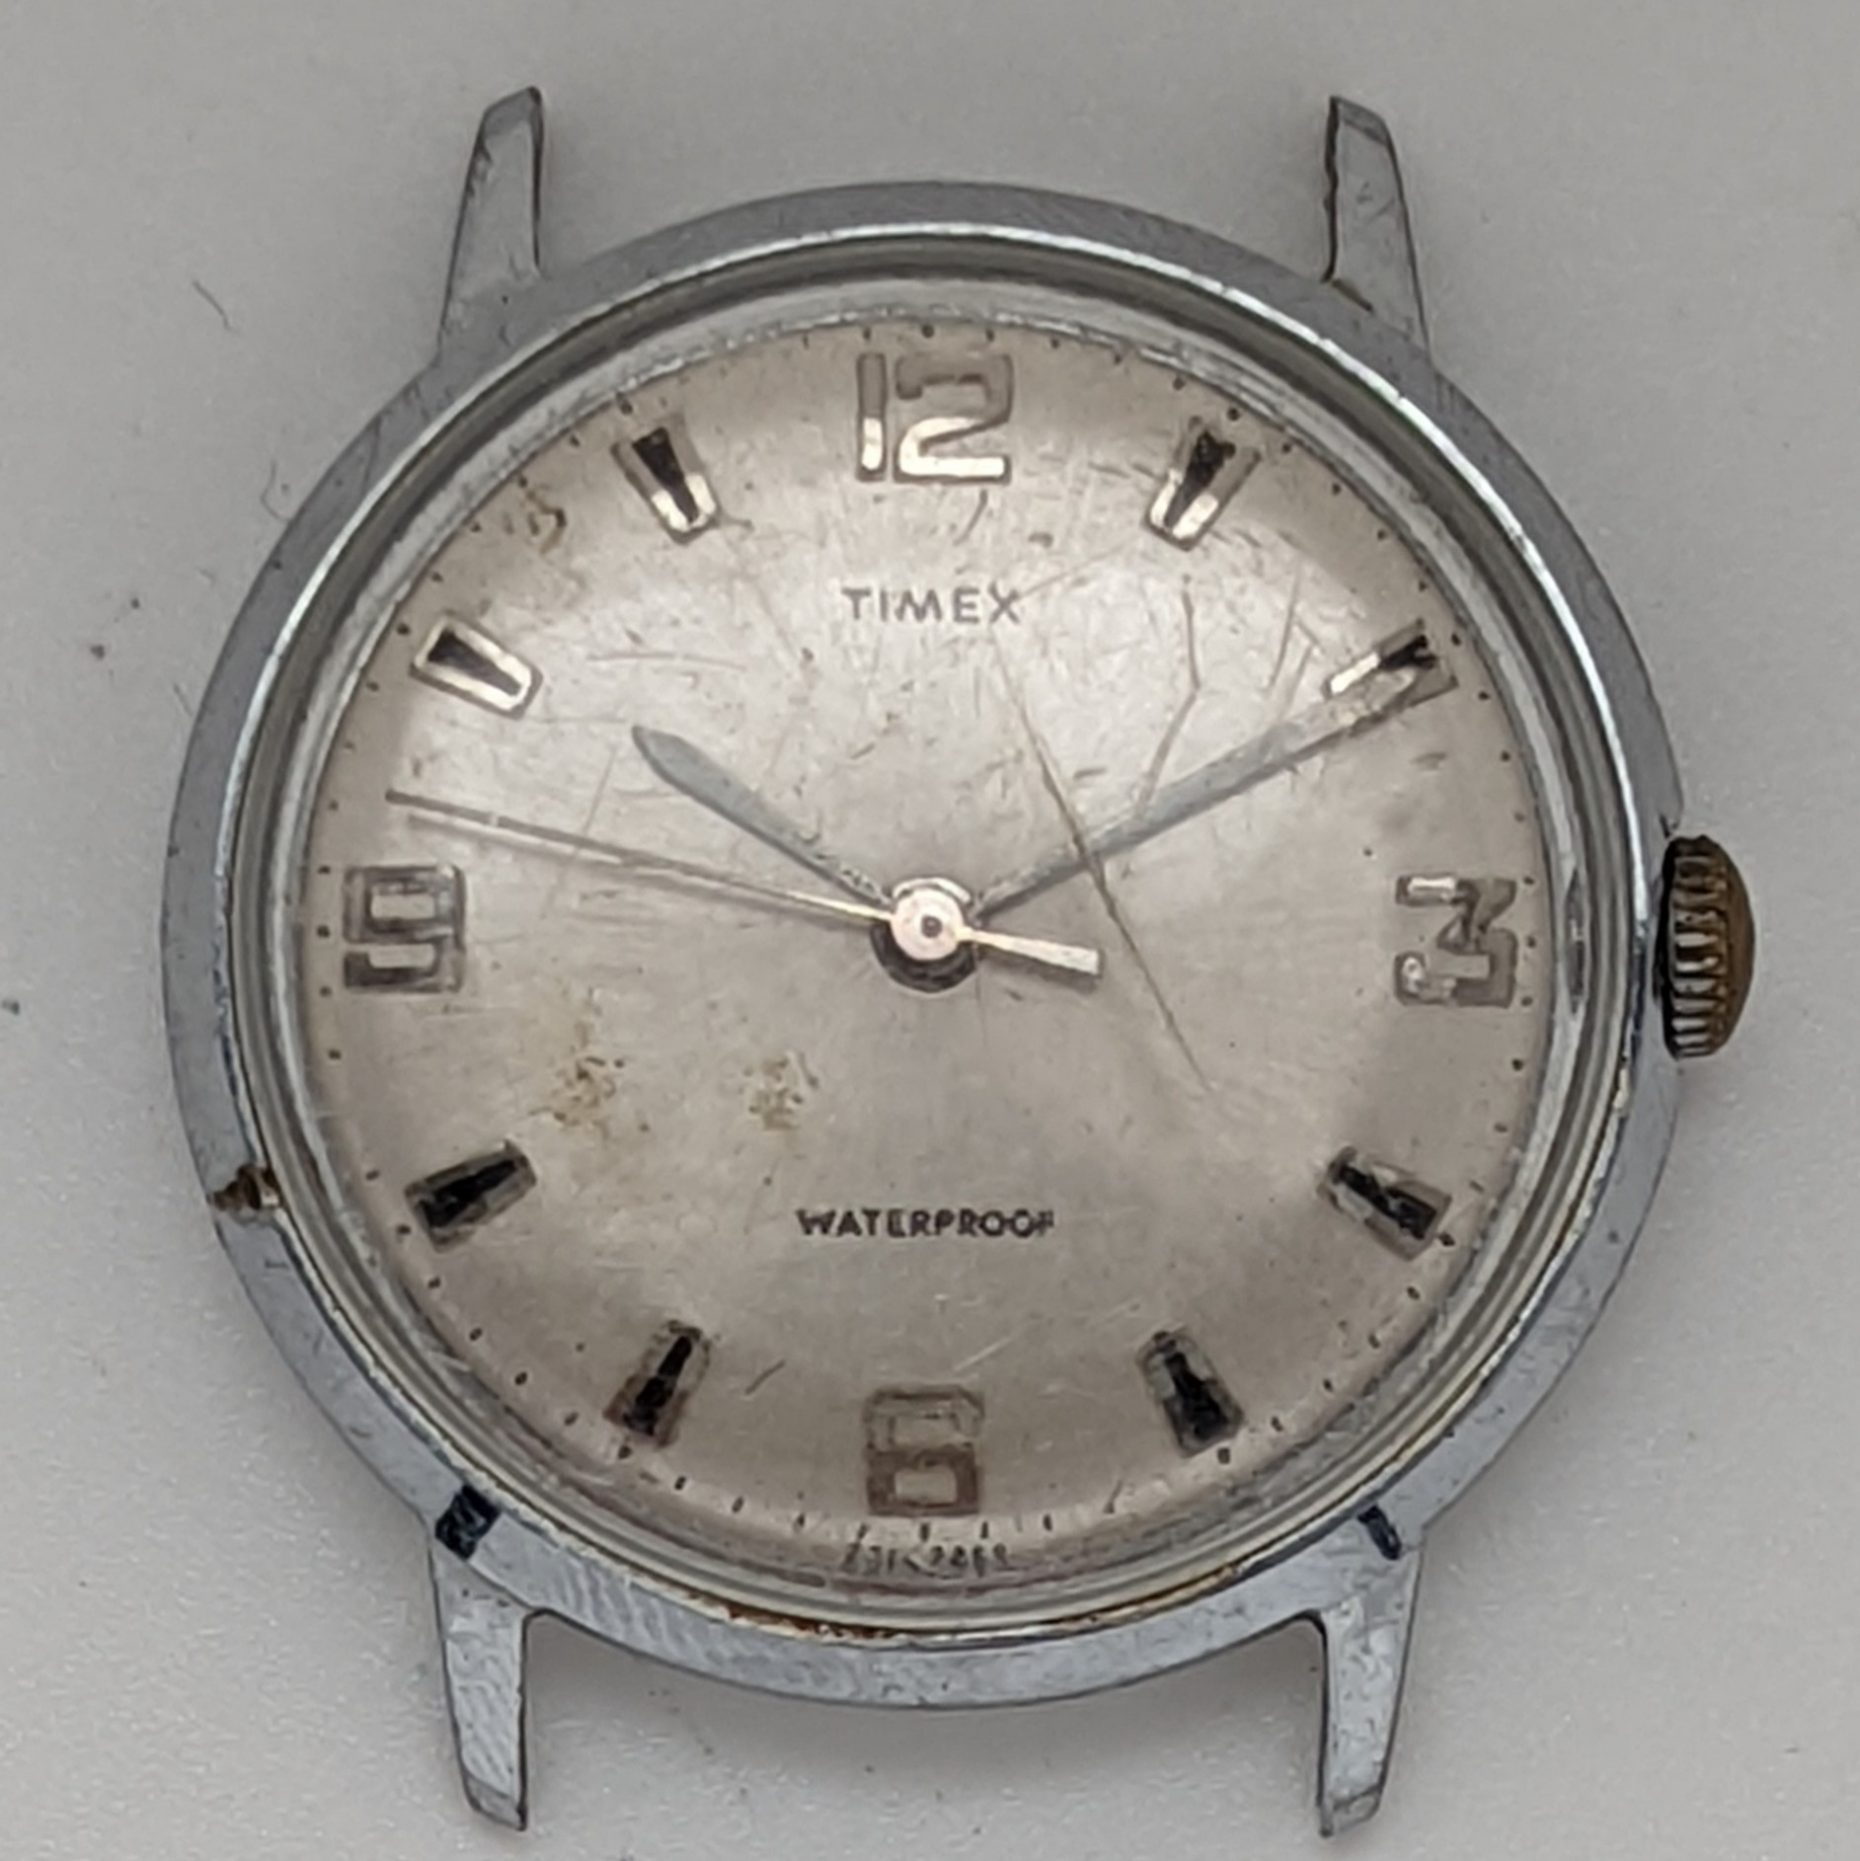 Timex Marlin 2014 2469 [1969]